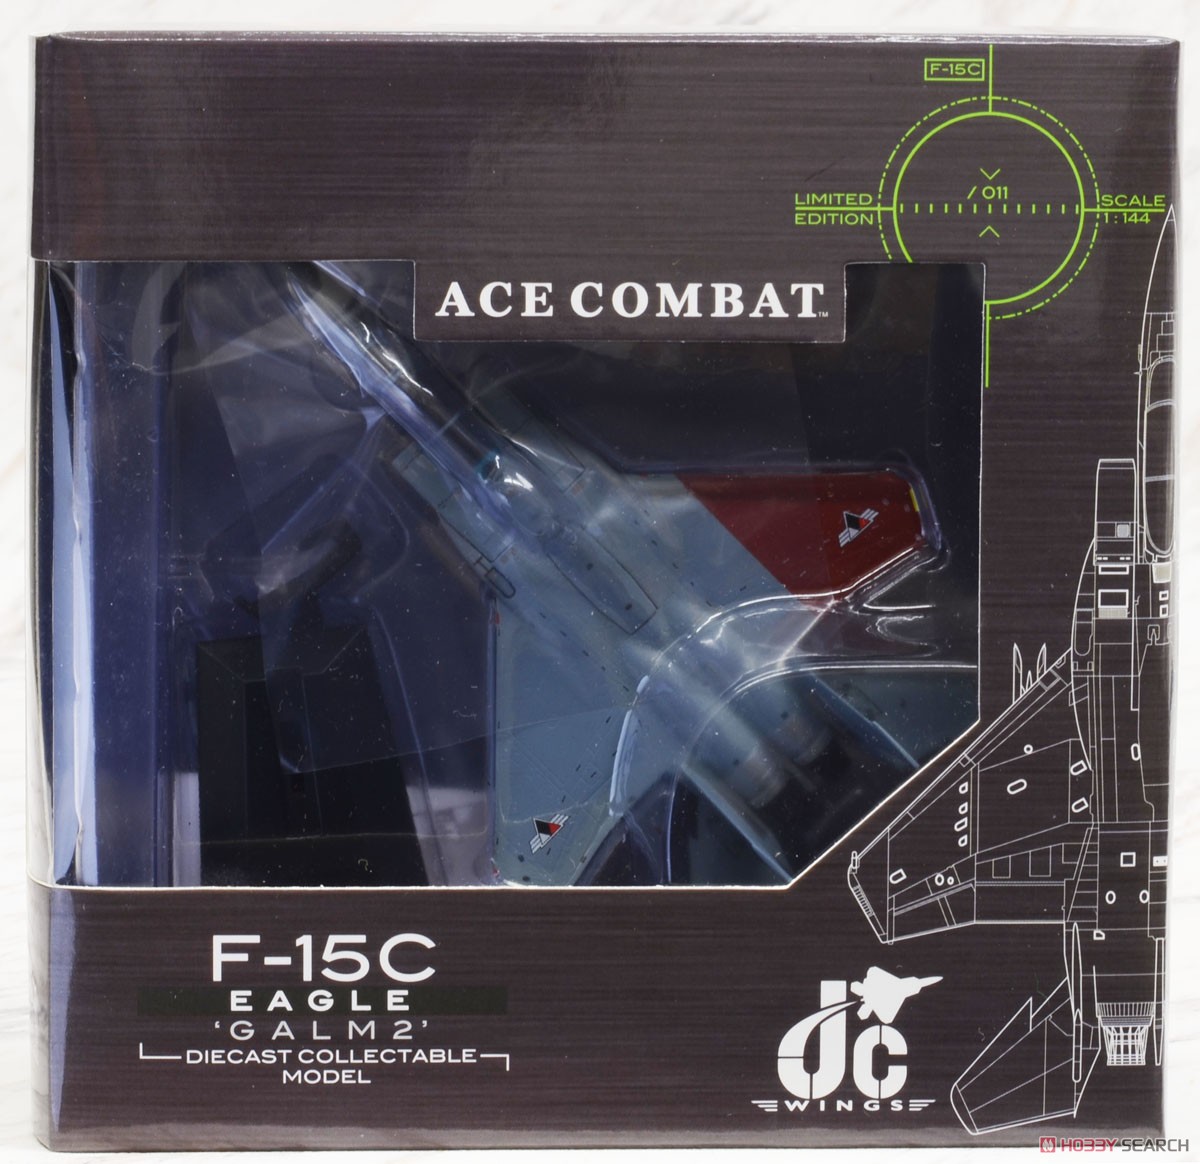 F-15C イーグル エースコンバット ガルム 2 (完成品飛行機) パッケージ1